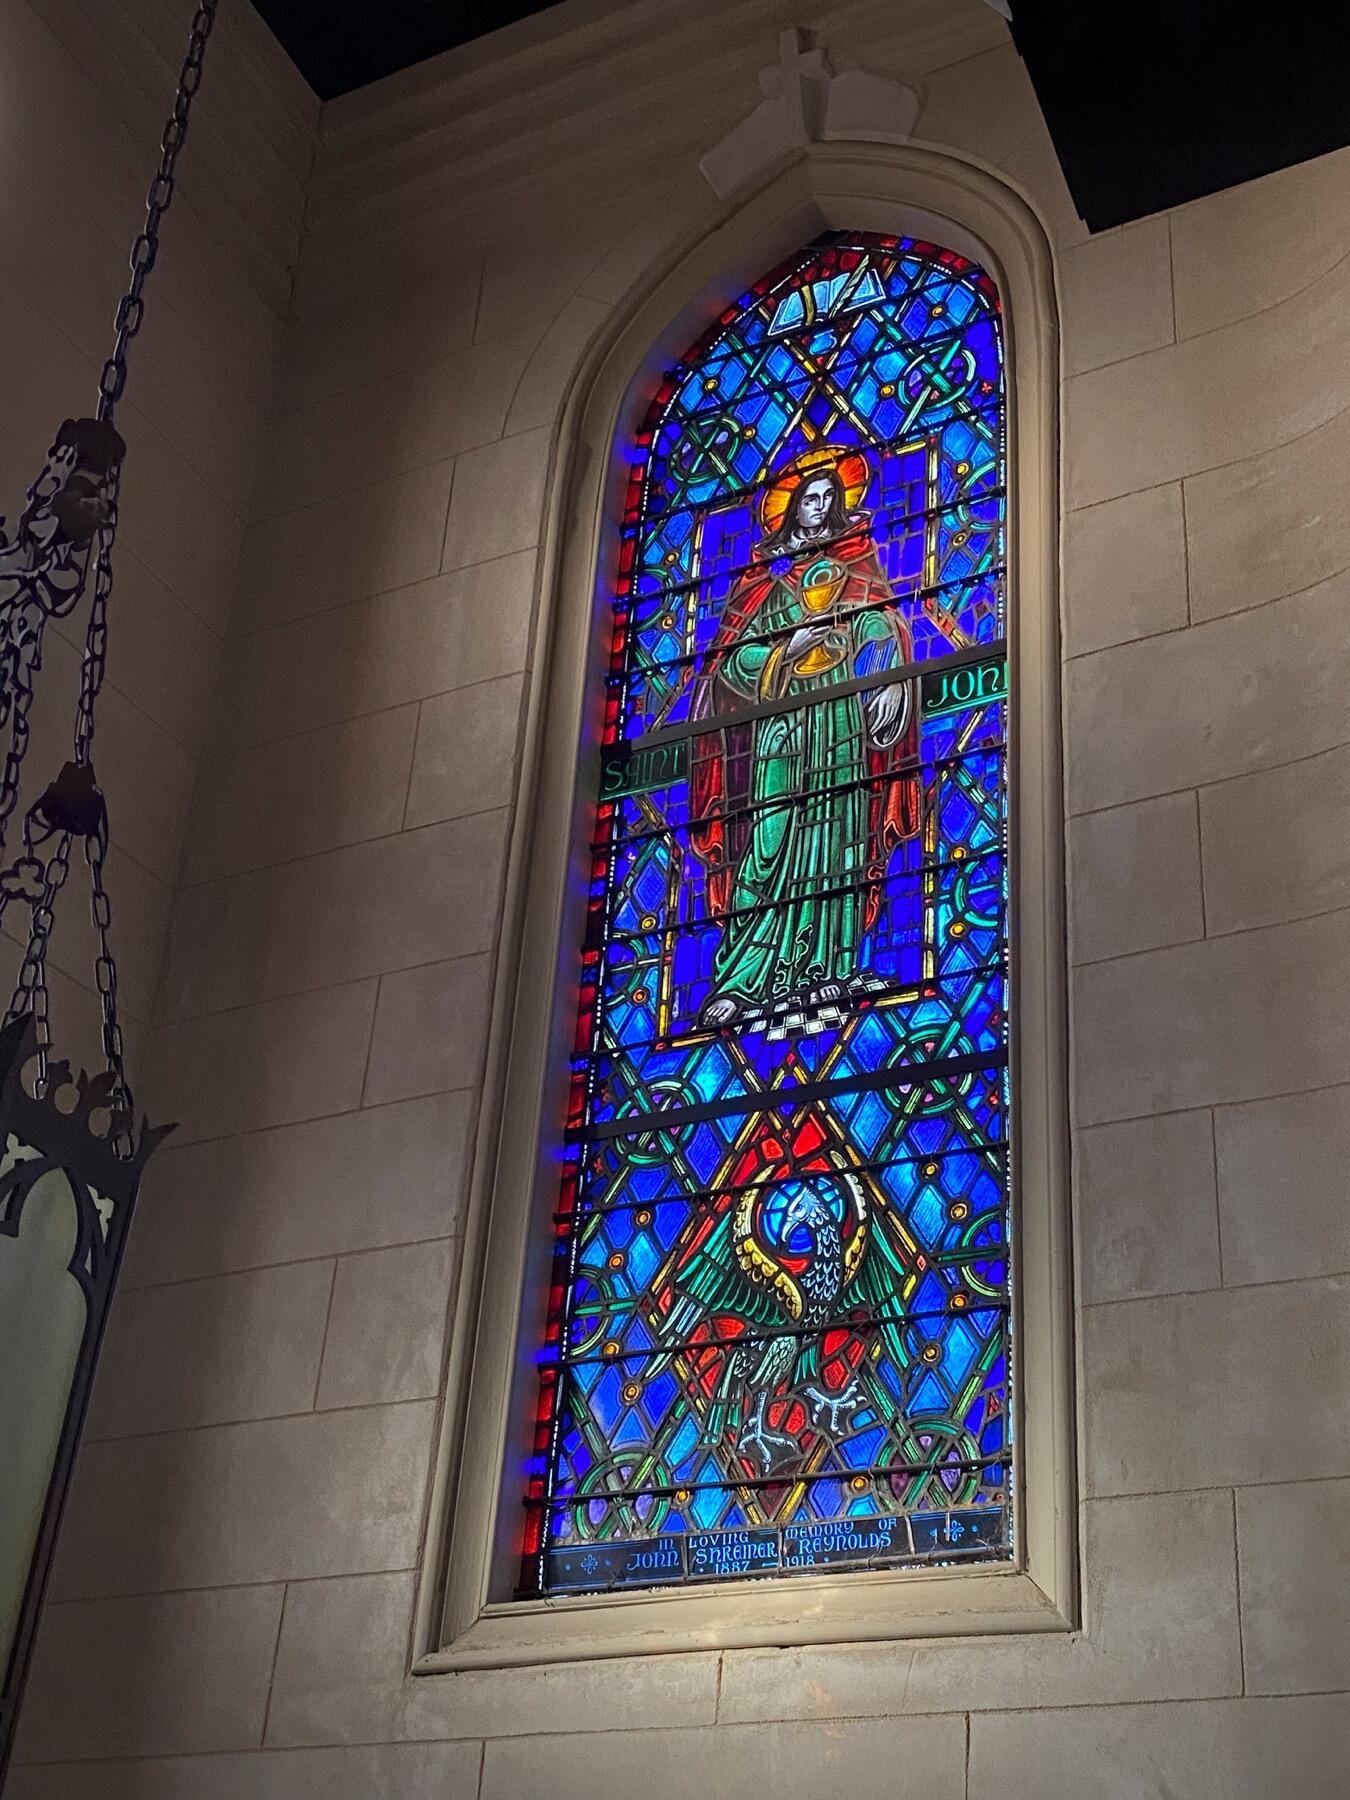 The Saint John Window